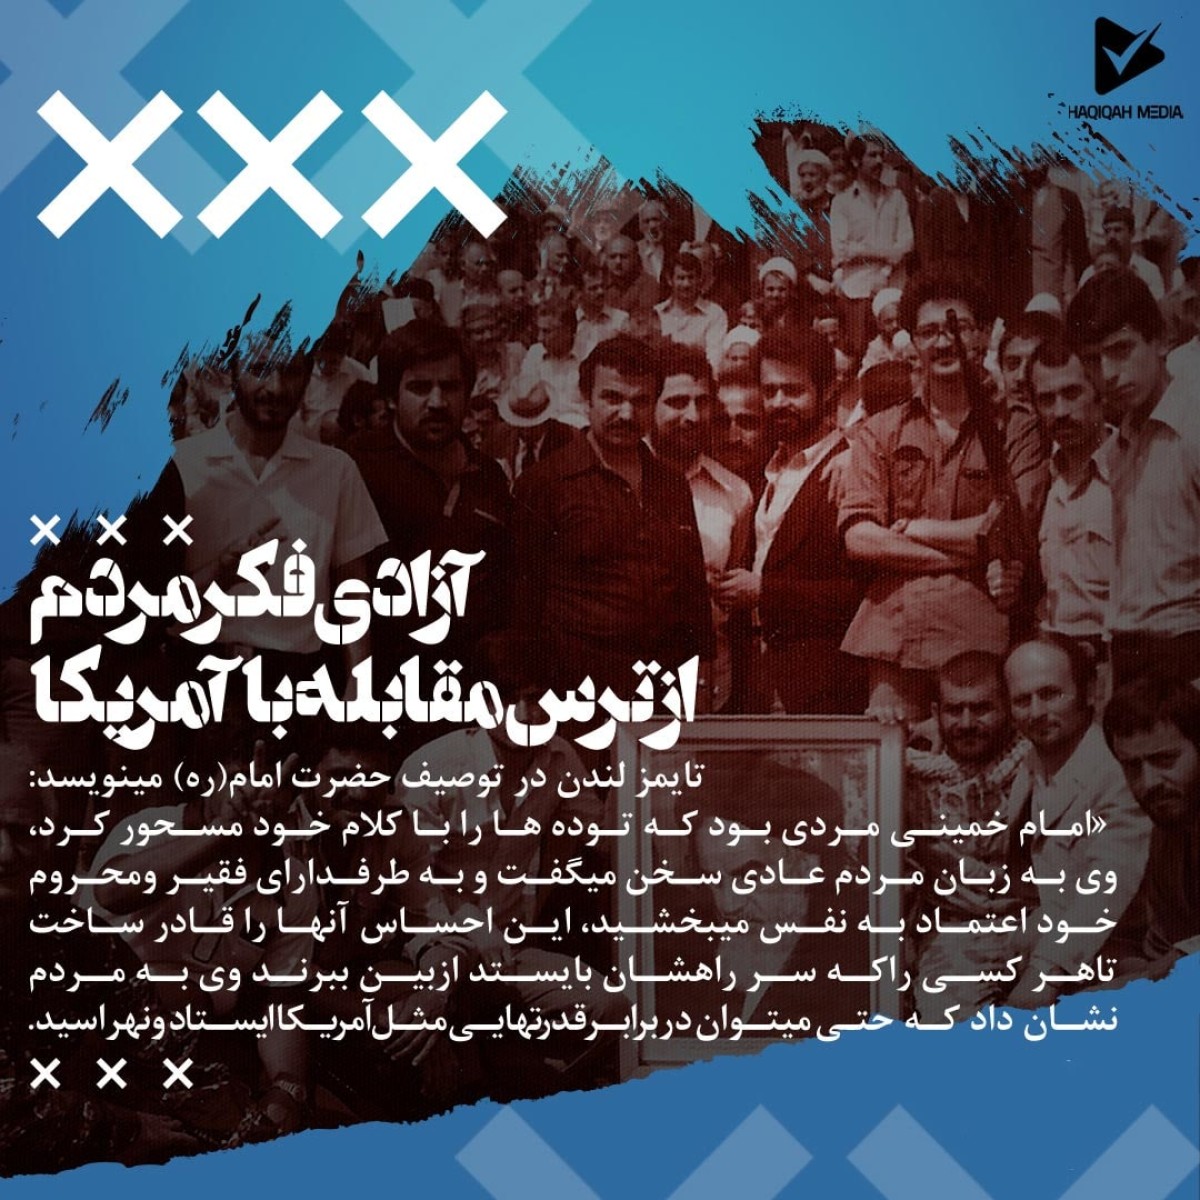 امام خمینی مردی بود که توده ها را با کلام خود مسحور کرد